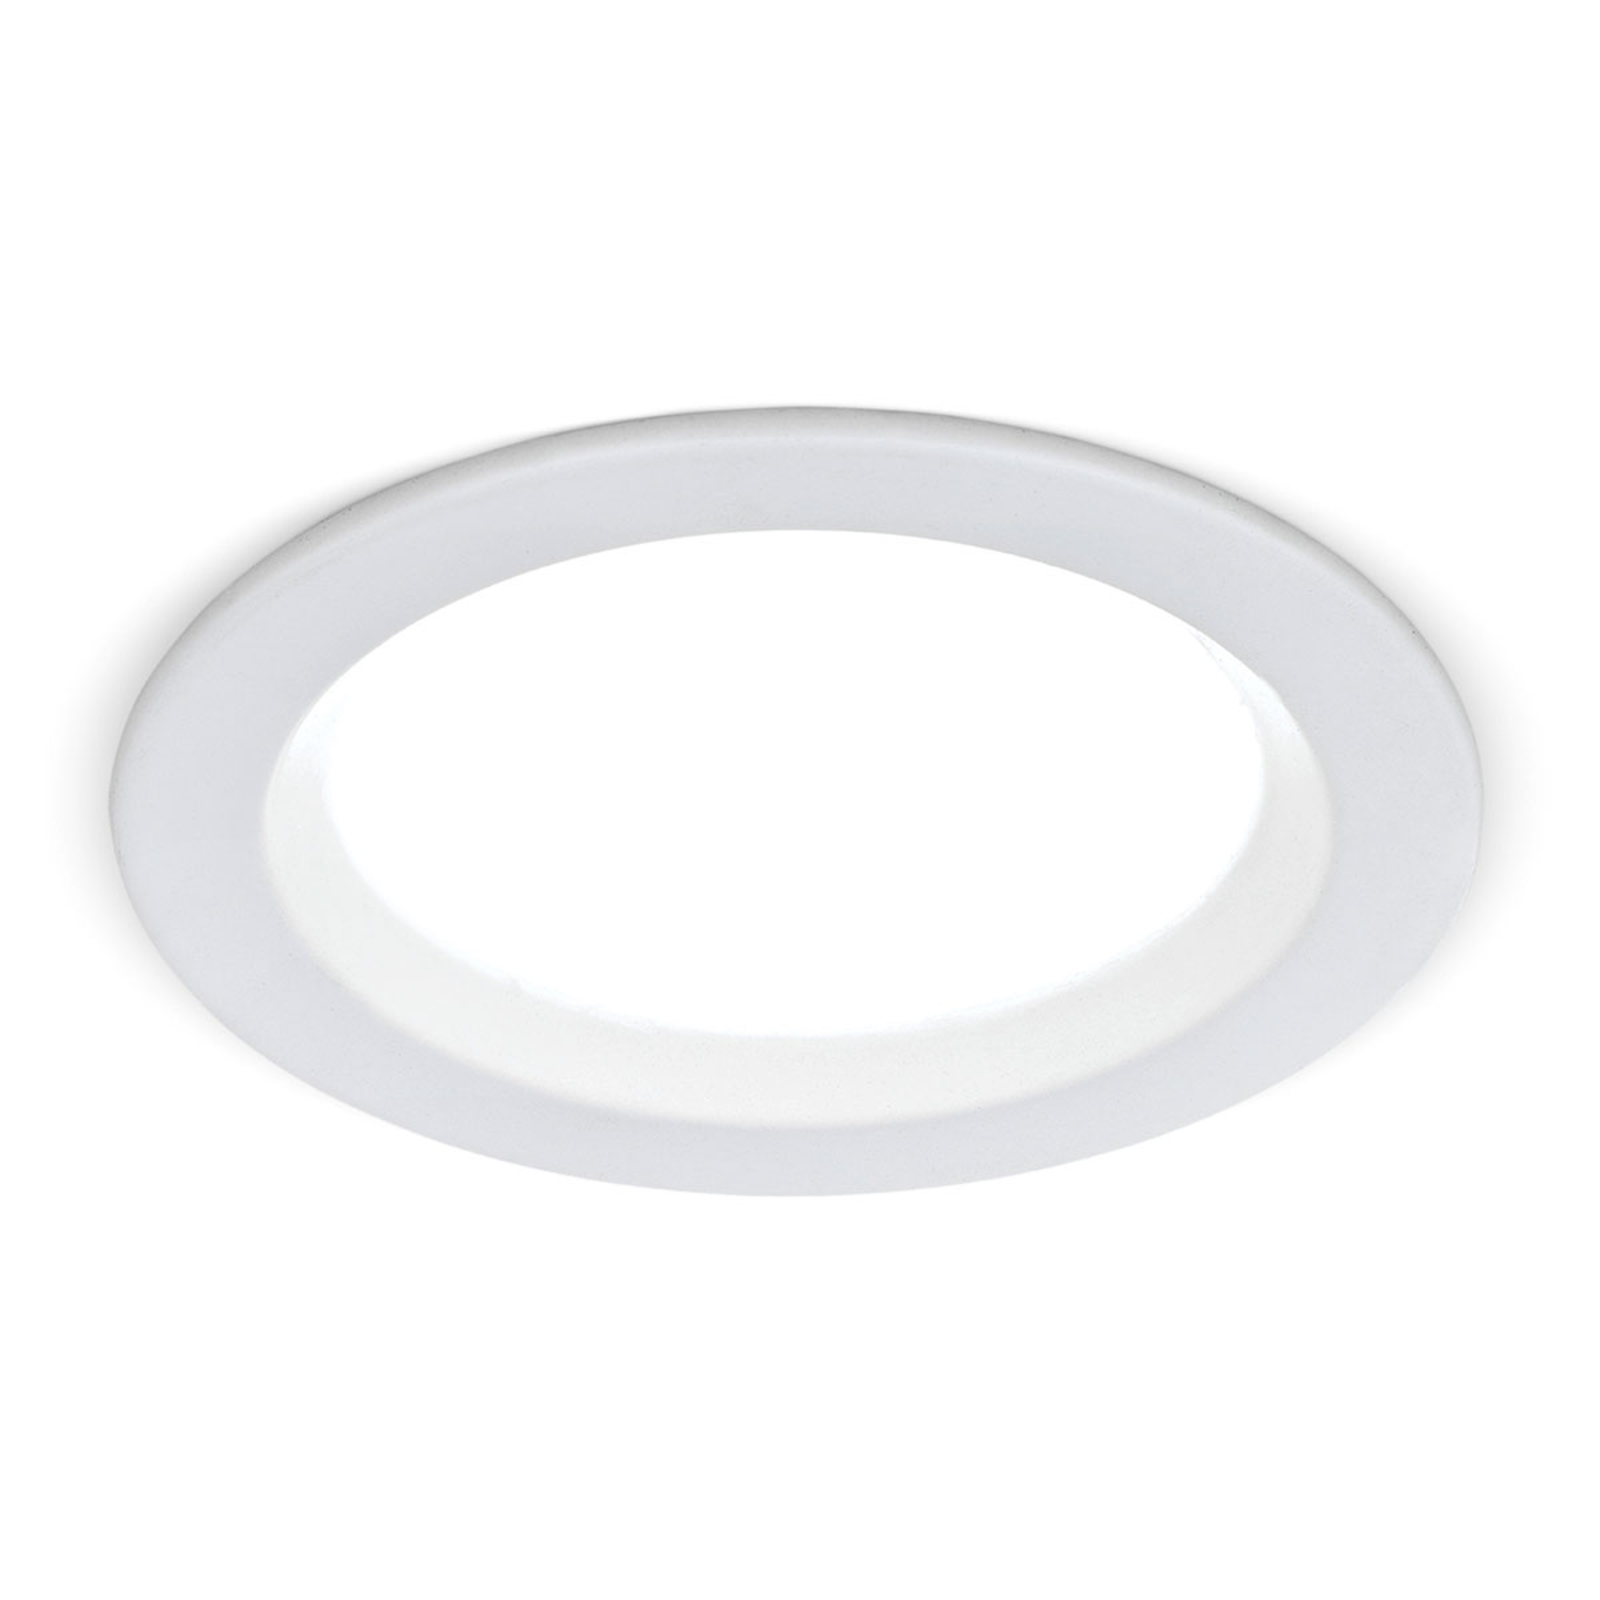 Lámpara empotrada LED Spock atenuable Ø 9cm blanco